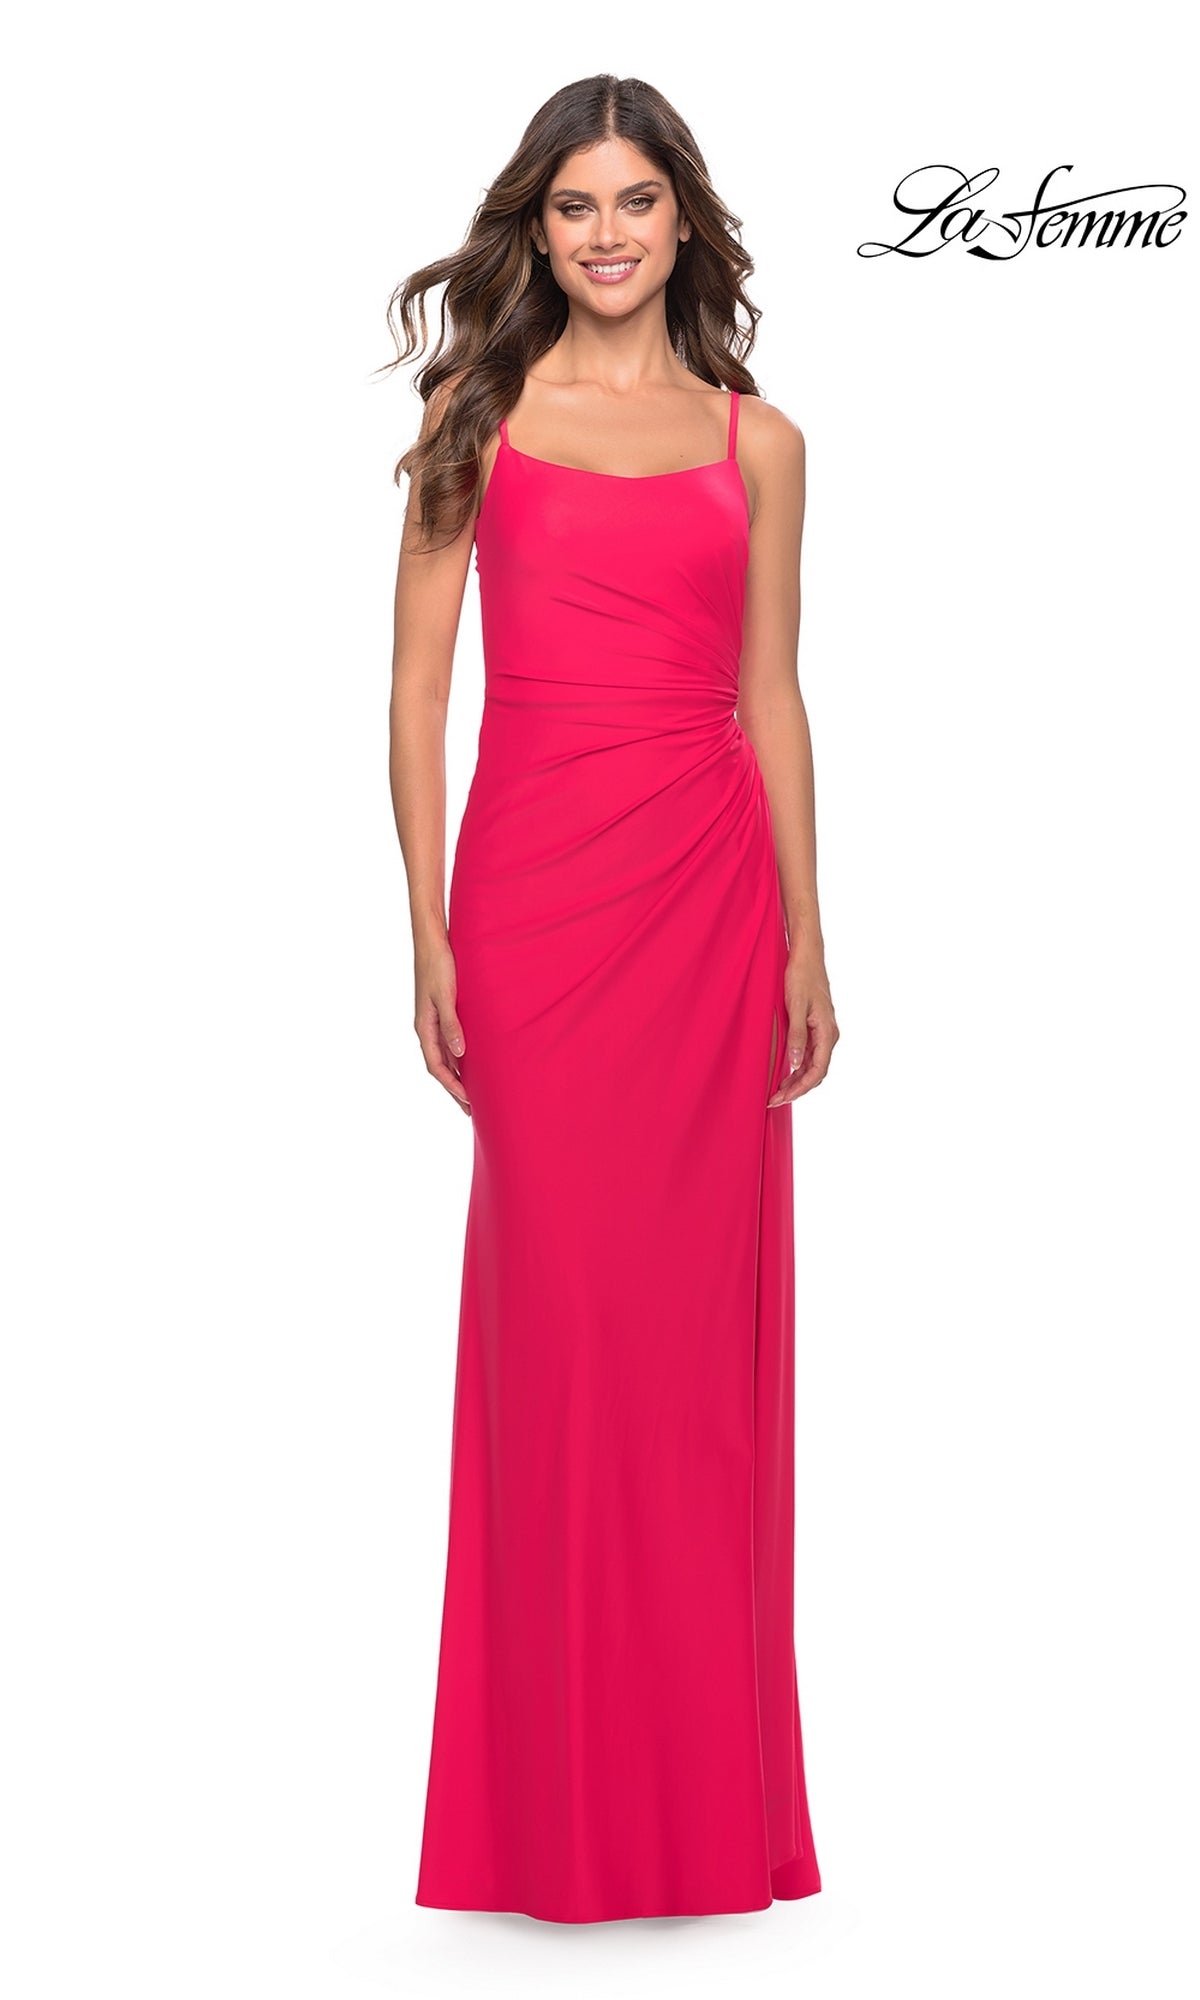 La Femme Side-Slit Backless Long Prom Dress 31329